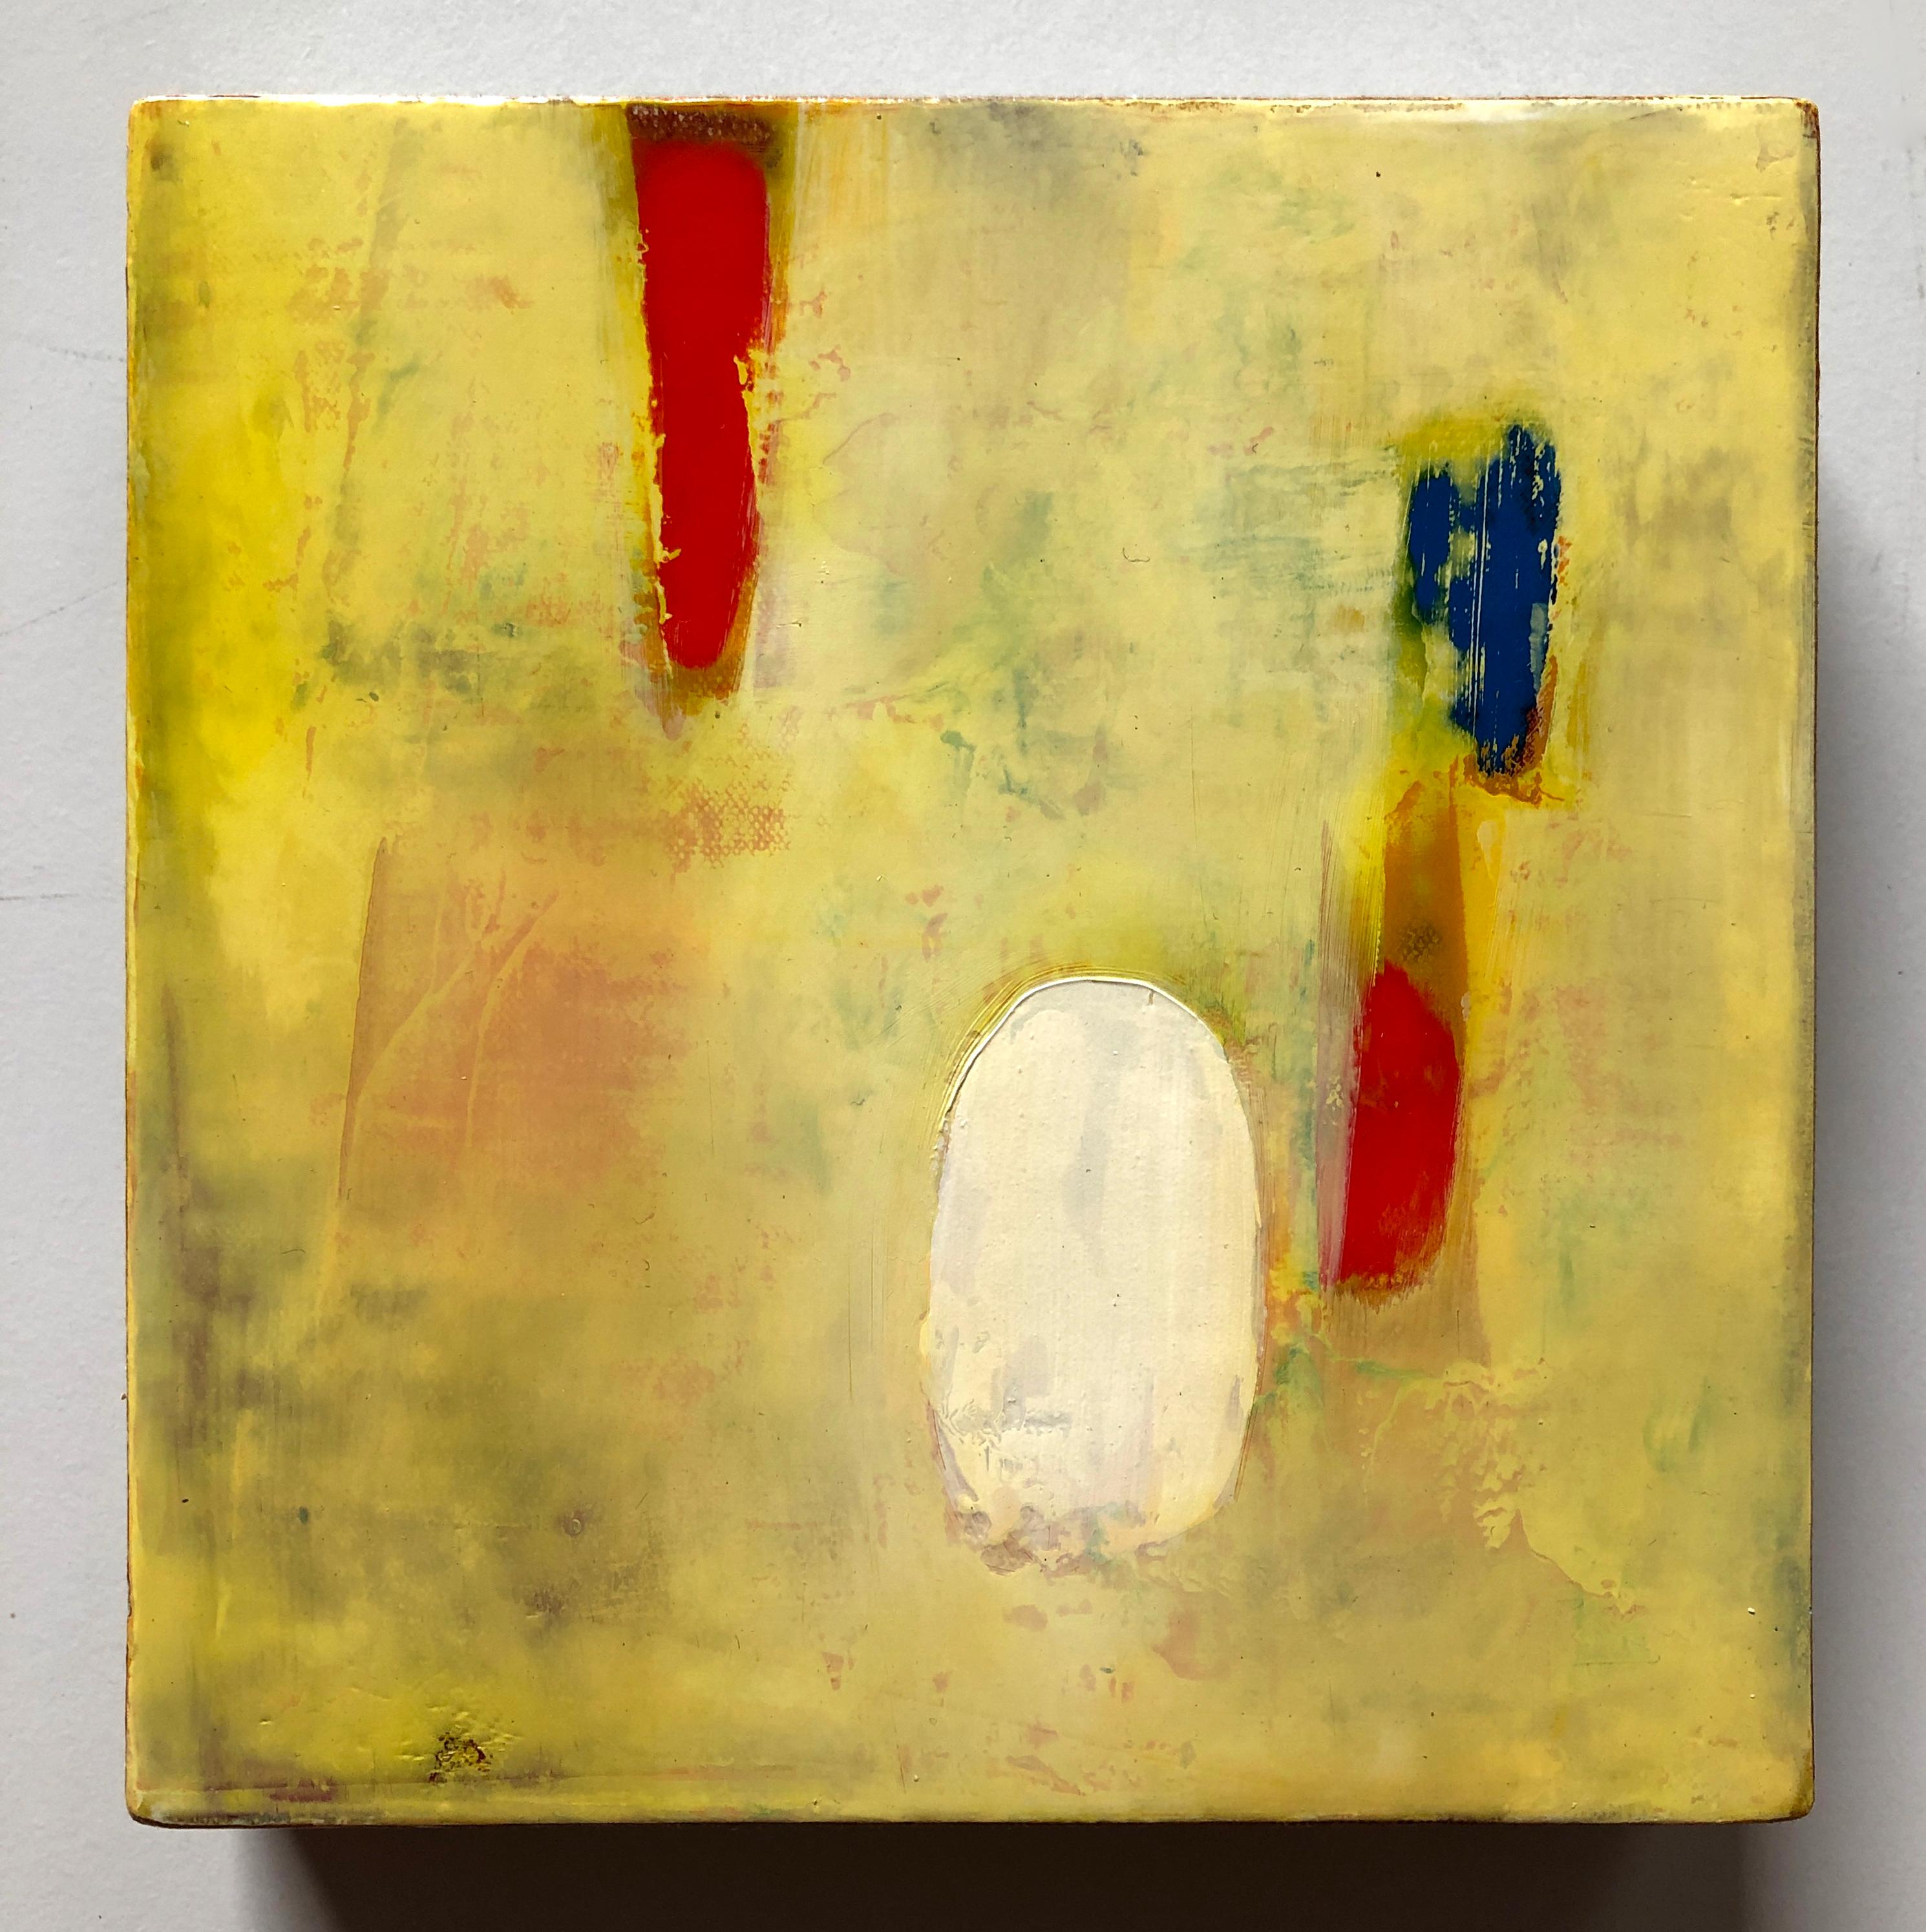 Kanarien, Öl auf Leinwand, gelbes abstraktes farbenfrohes Gemälde